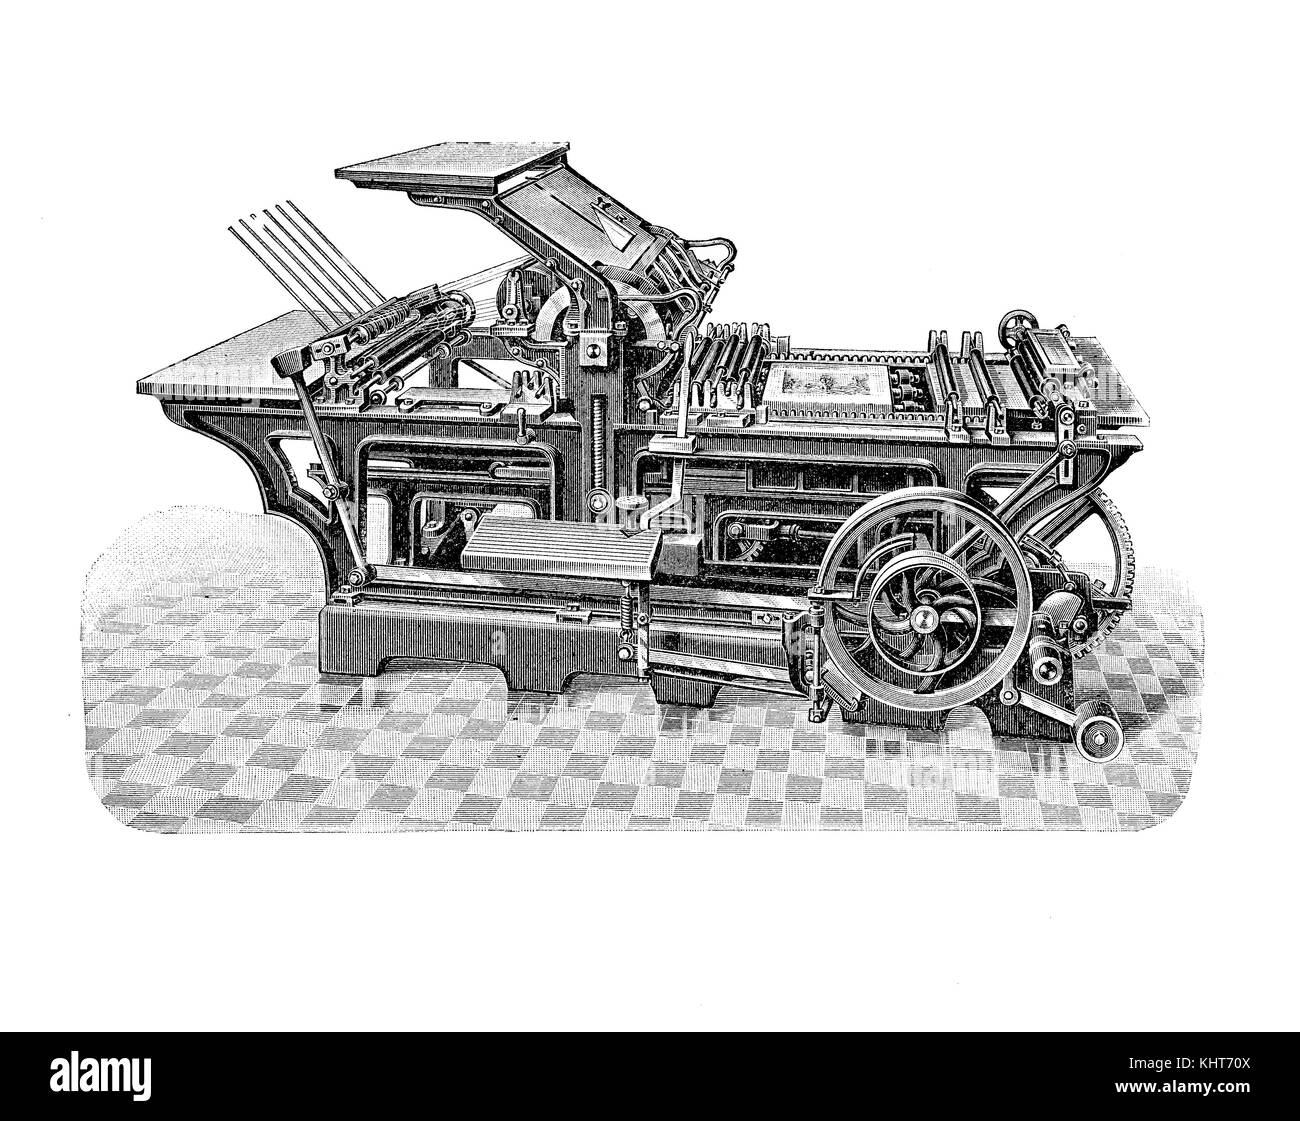 Machine de presse à imprimer Hugo Koch pour la production d'impression et d'édition, illustration du XIXe siècle Banque D'Images